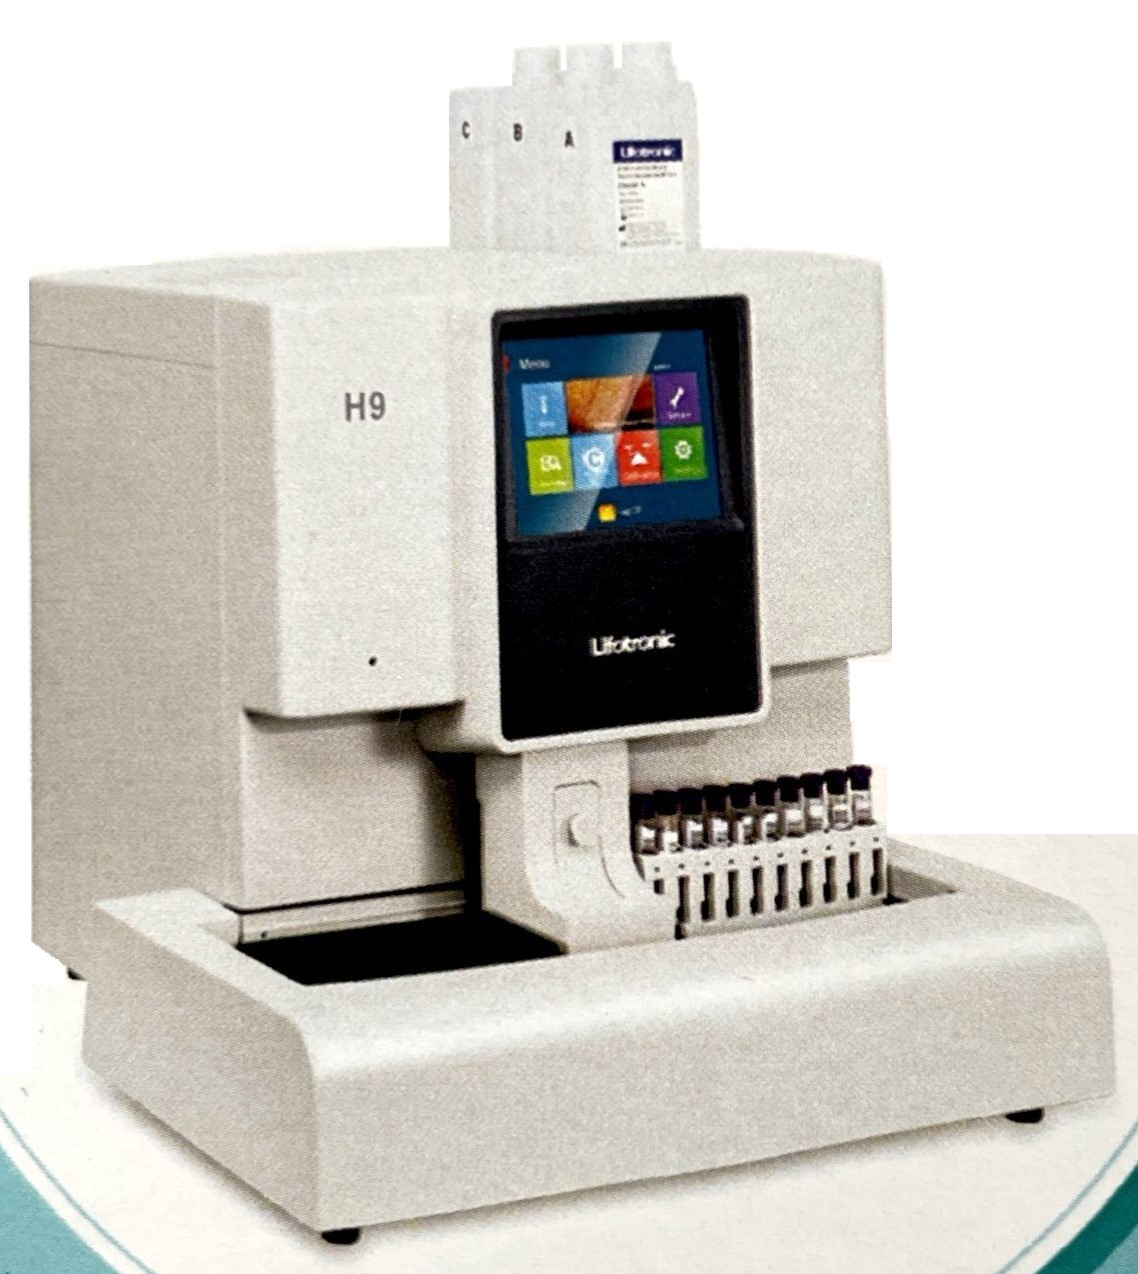 دستگاه کروماتوگرافی  H9 شرکت لایفوترونیک - Lifotronic Chromatography H9